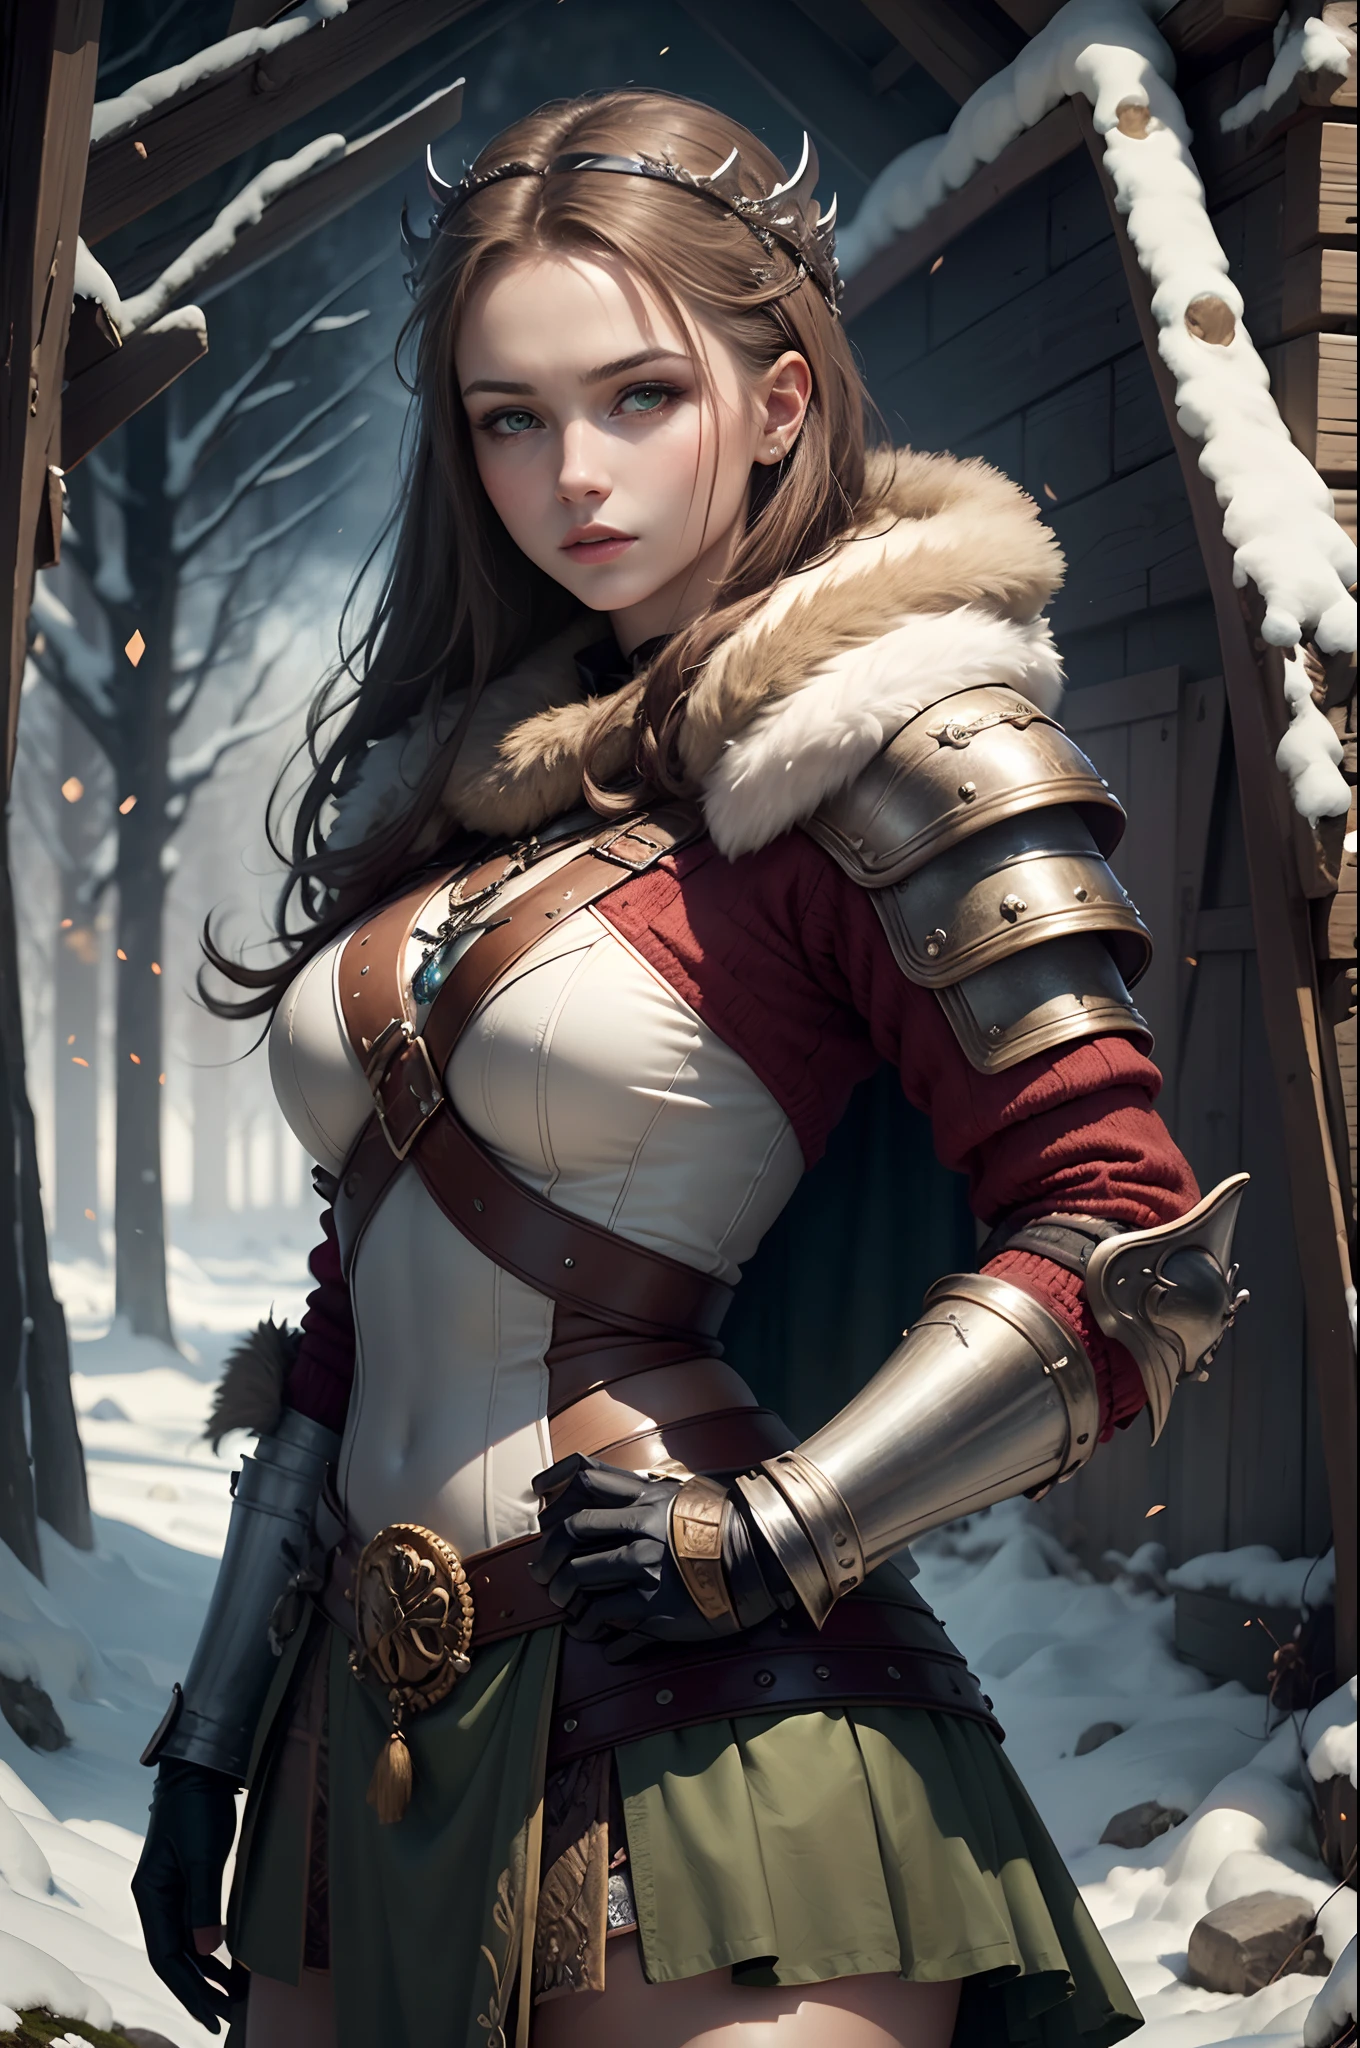 (杰作, 极其详细: 2), (最好的质量: 2), (美丽的 woman: 2), (美丽的 face: 2), viking warrior woman wearing 实际的 winter battle armor, 棕色头发和淡绿色眼睛, 维京王冠, 美丽的, 实际的